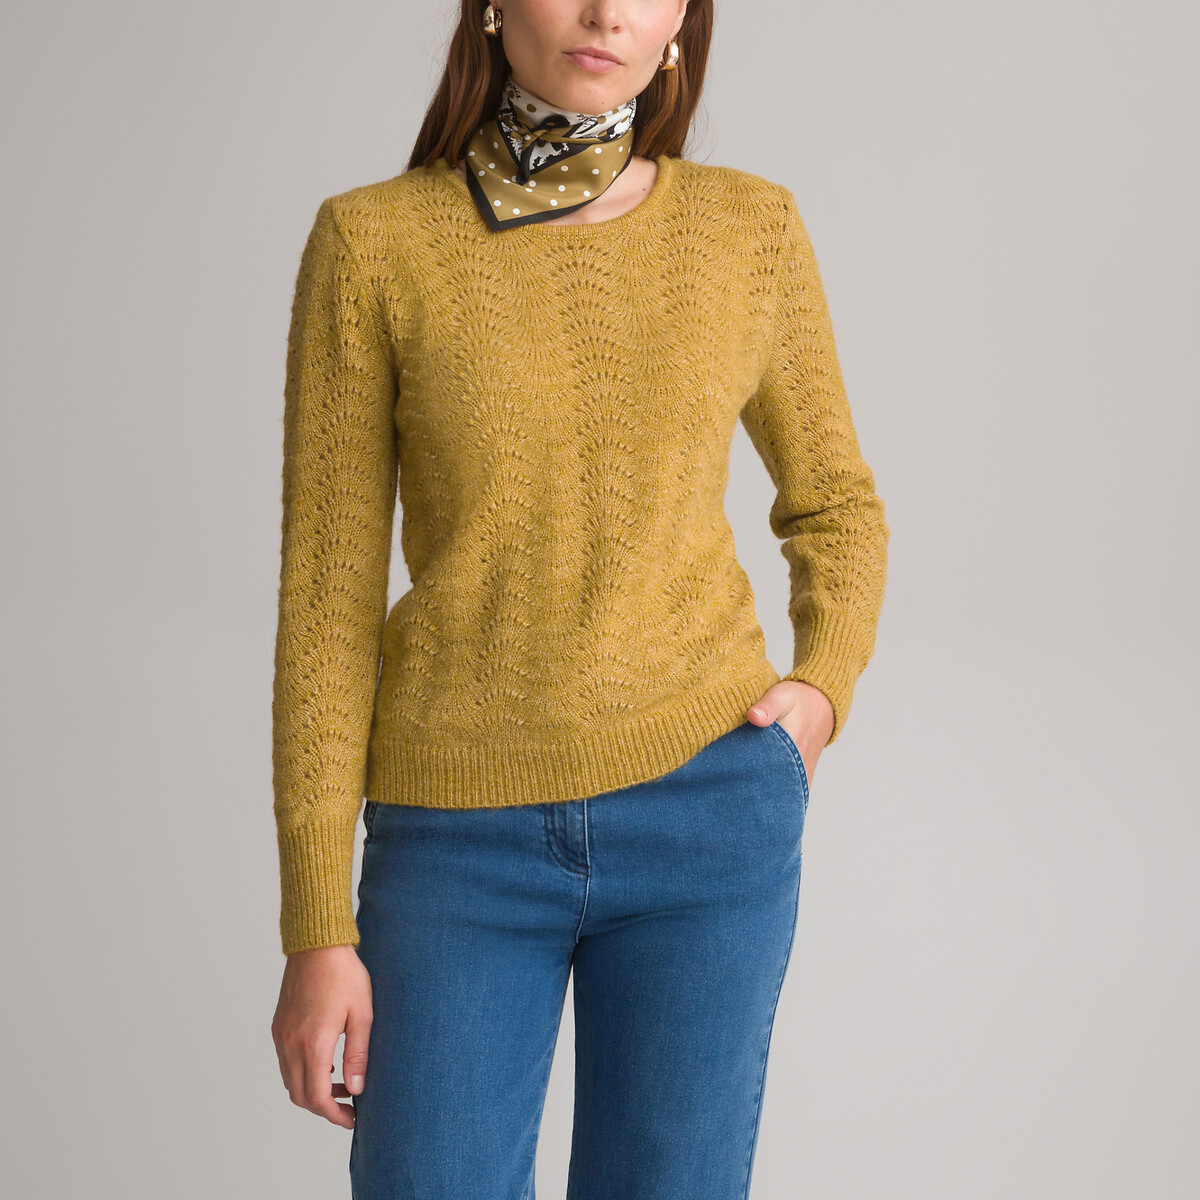 Пуловер с круглым вырезом из тонкого ажурного трикотажа 42/44 (FR) - 48/50 (RUS) желтый